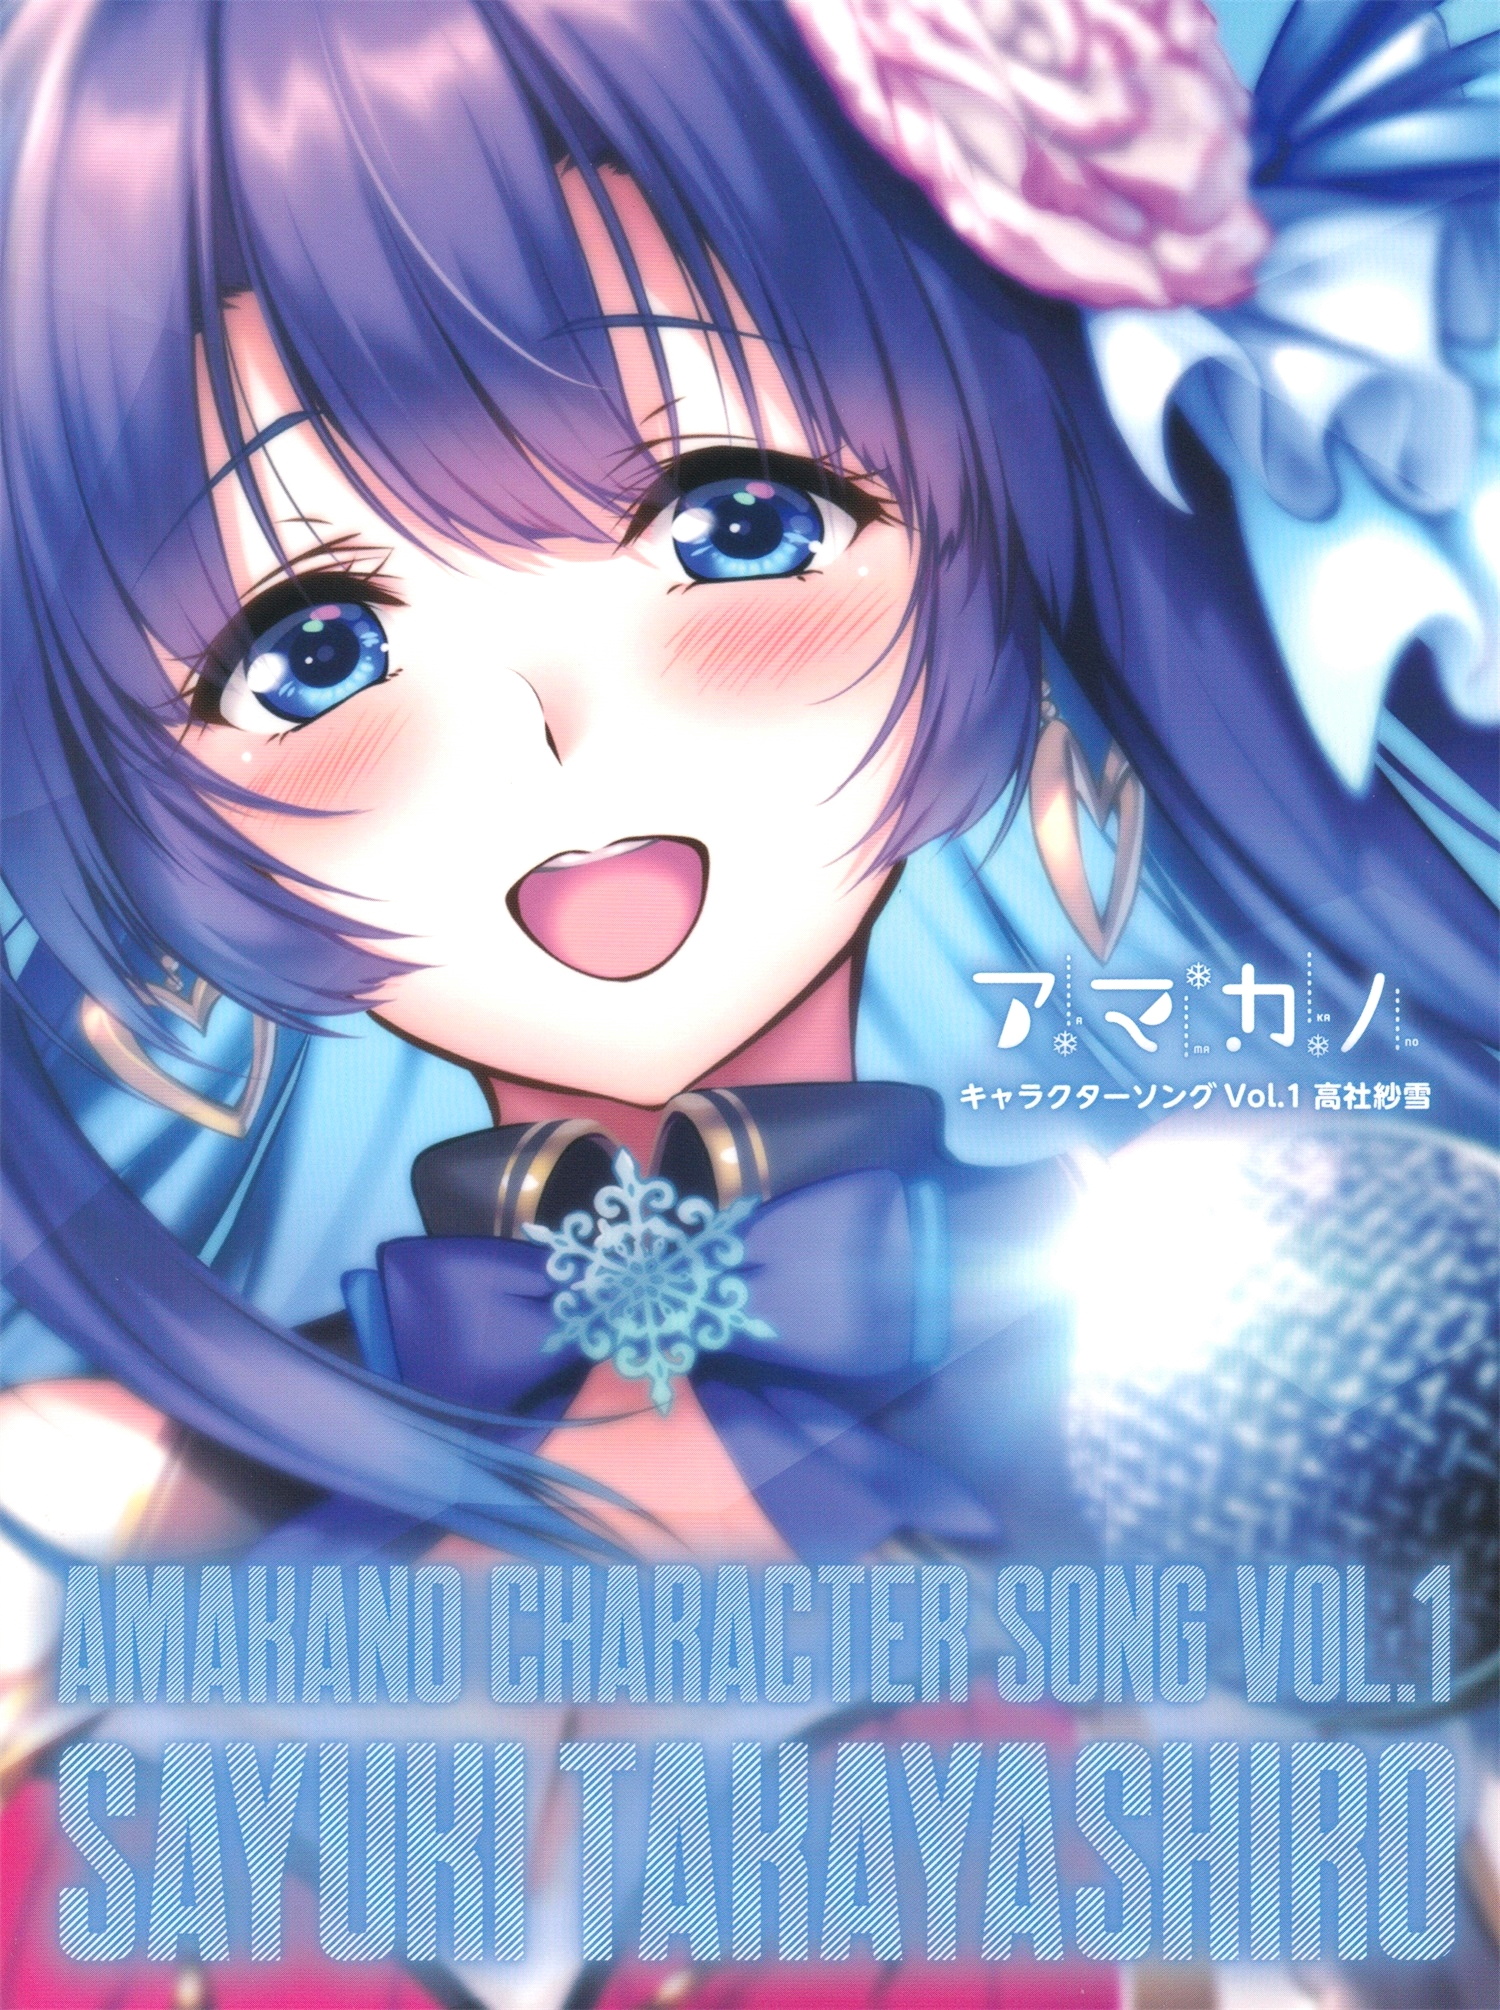 【WAV】ゲーム「アマカノ」Character Song Vol.1「高社紗雪」／あざらしそふと